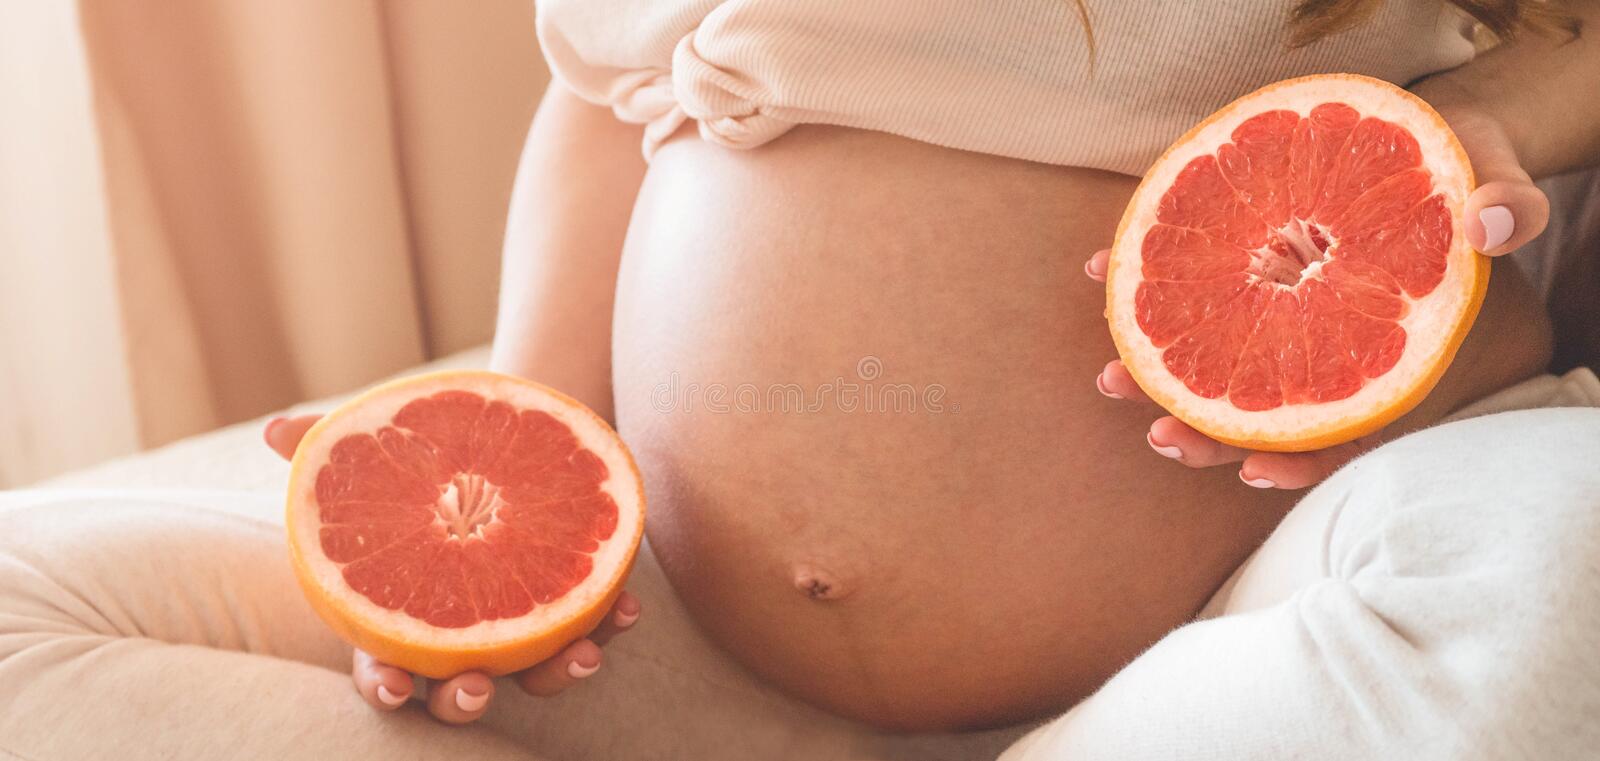 Грейпфрут при беременности: можно ли есть в 1, 2, 3 триместре, польза и вред, отзывы